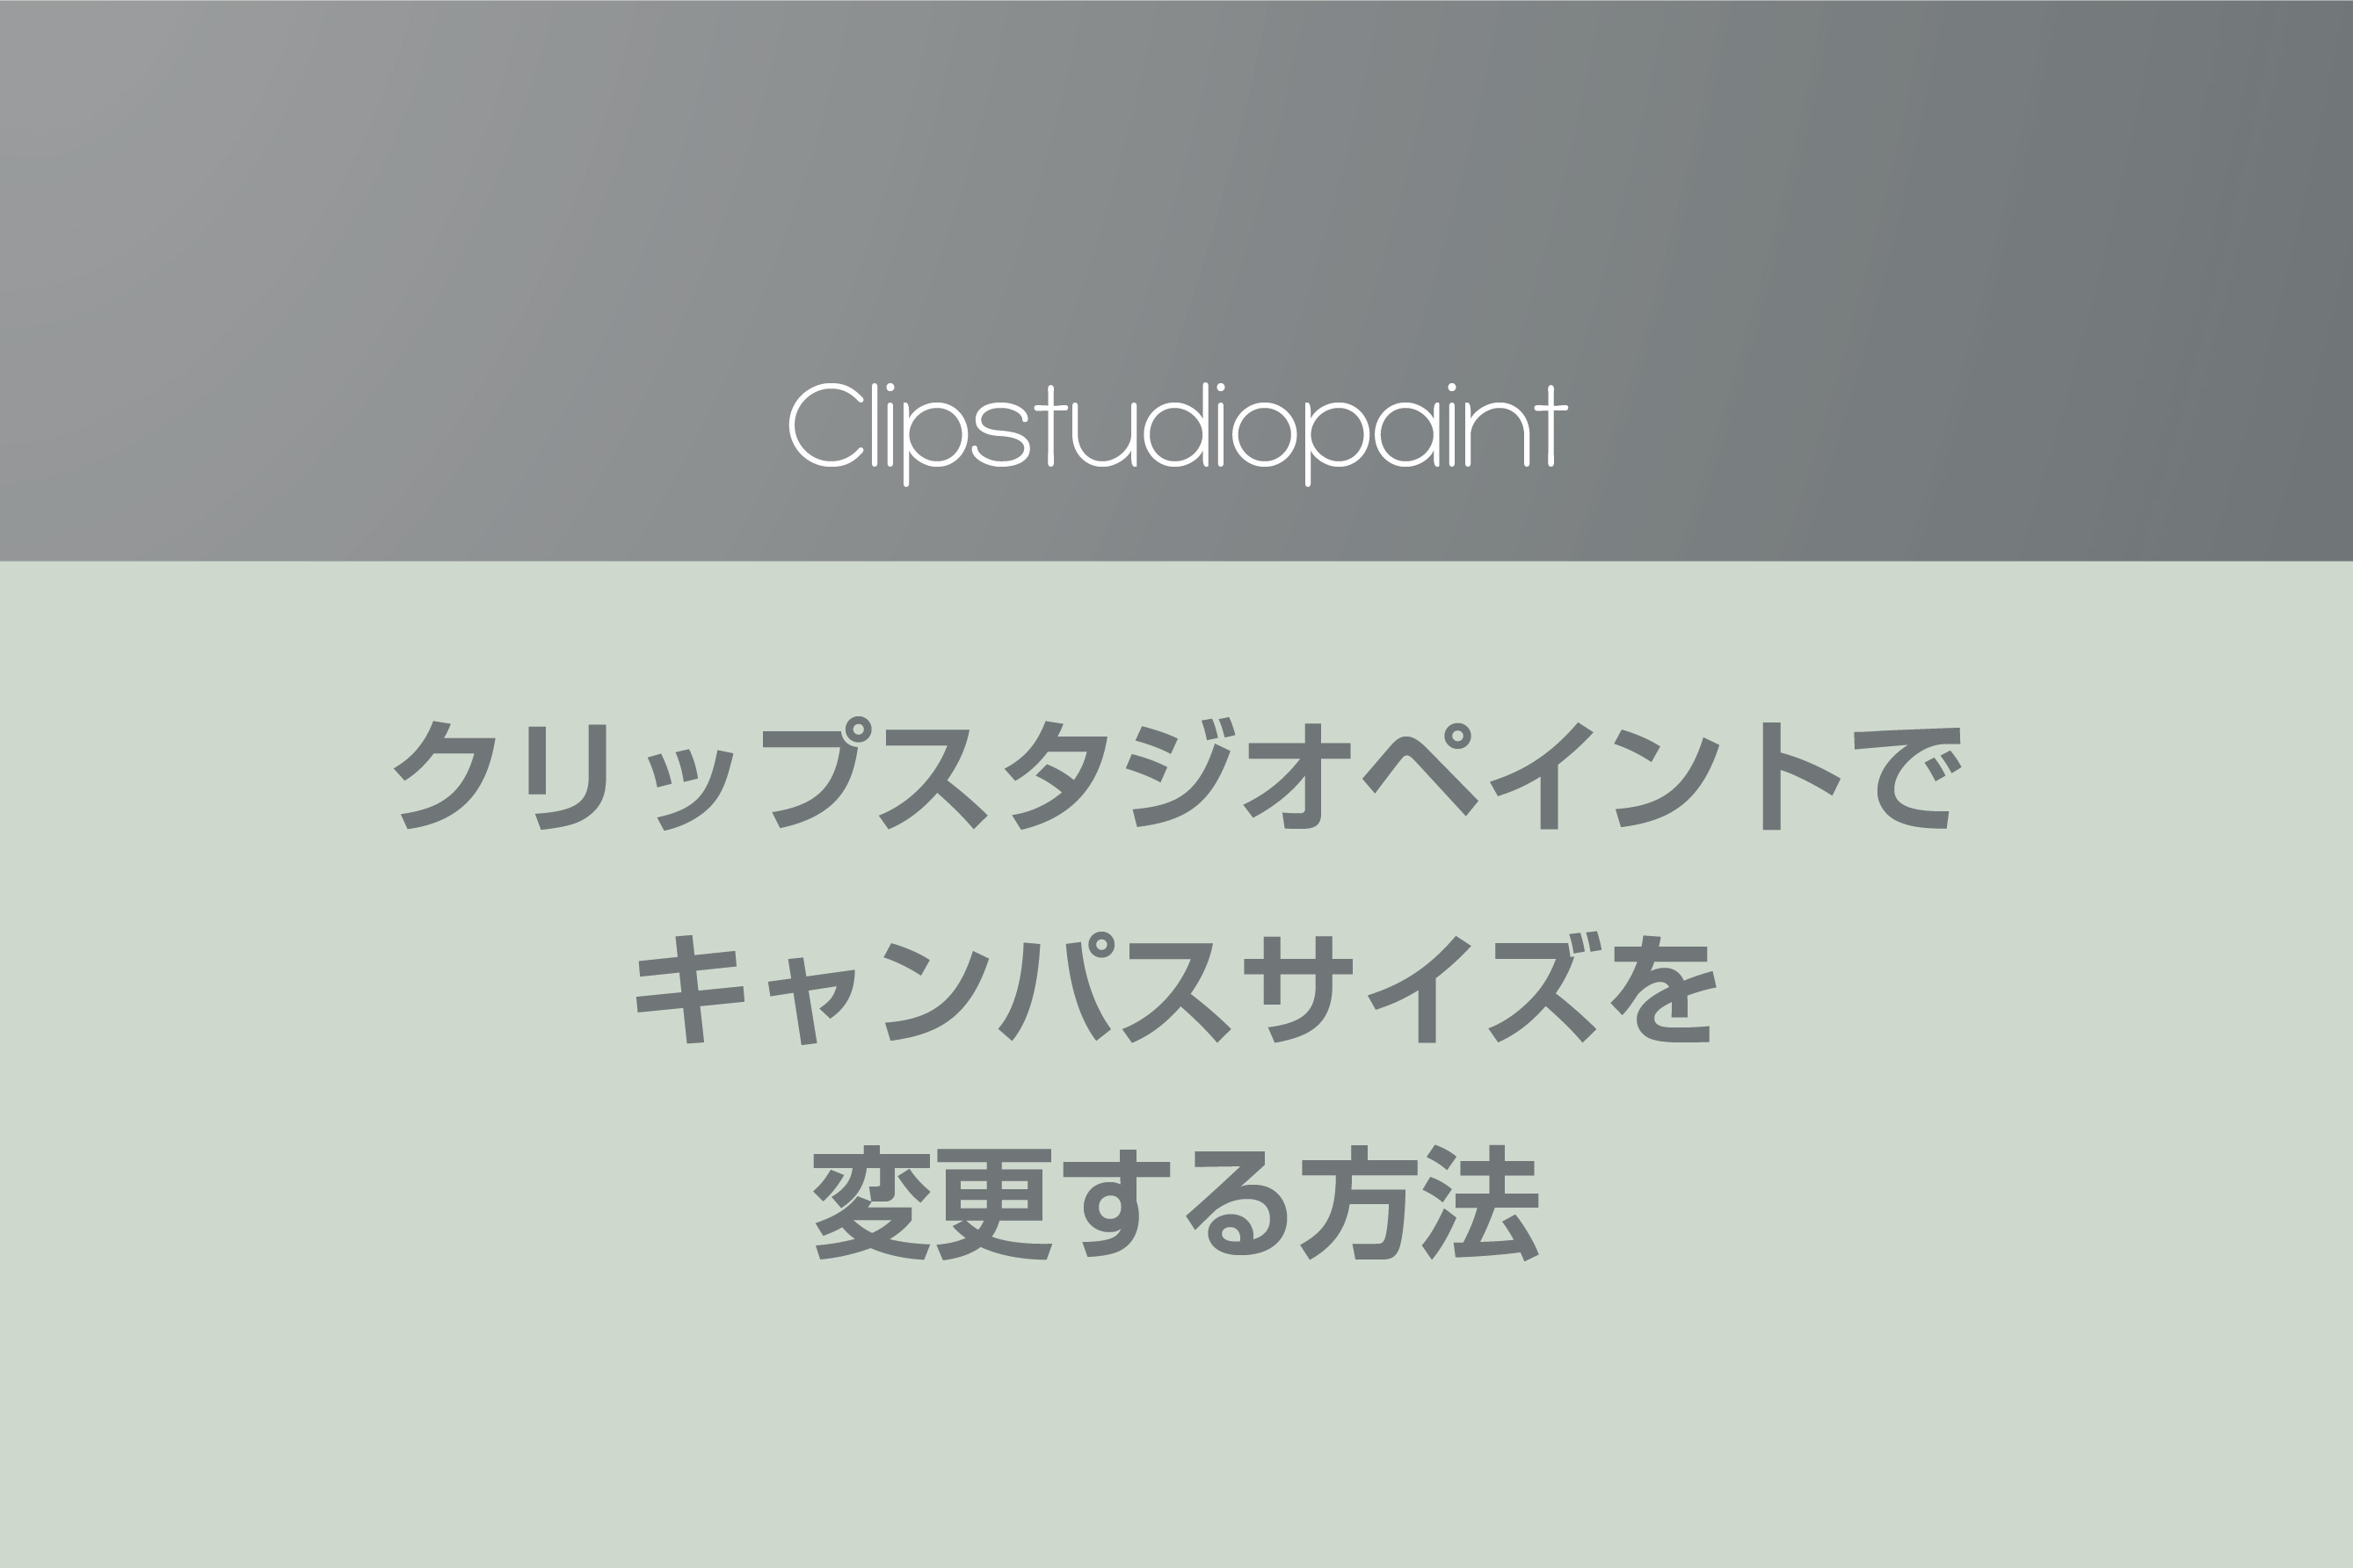 キャンバス サイズ クリスタ 【クリスタ】おすすめの解像度(DPI)とキャンパスサイズの設定【CLIP STUDIO